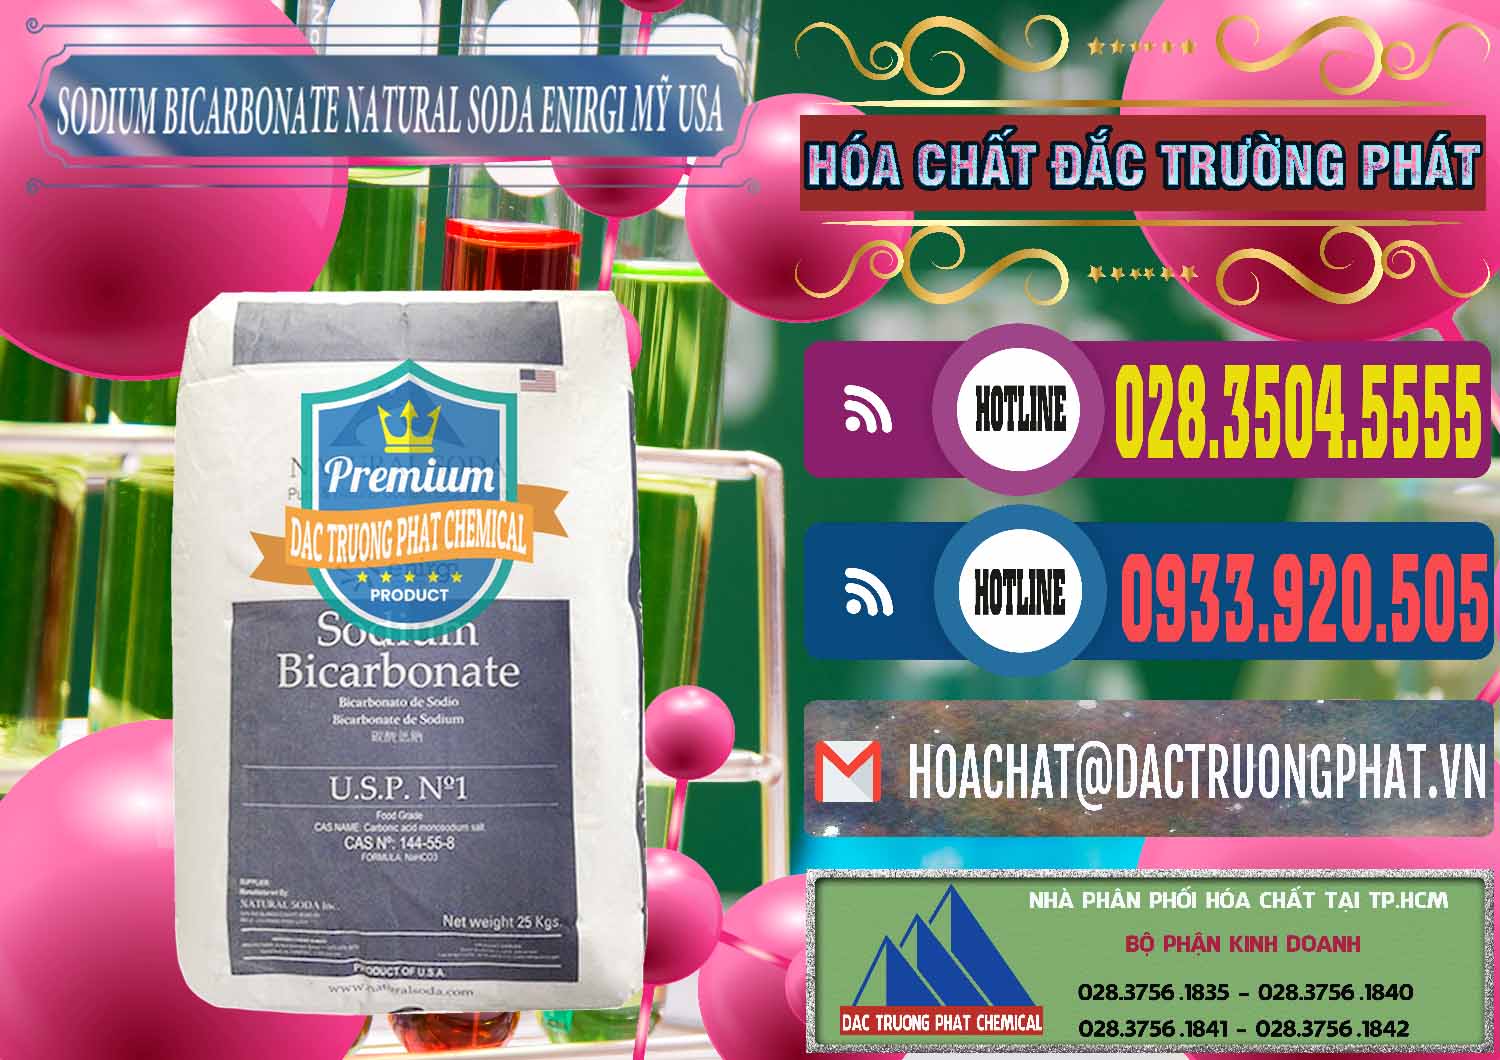 Công ty cung ứng và bán Sodium Bicarbonate – Bicar NaHCO3 Food Grade Natural Soda Enirgi Mỹ USA - 0257 - Cty cung cấp & phân phối hóa chất tại TP.HCM - muabanhoachat.com.vn